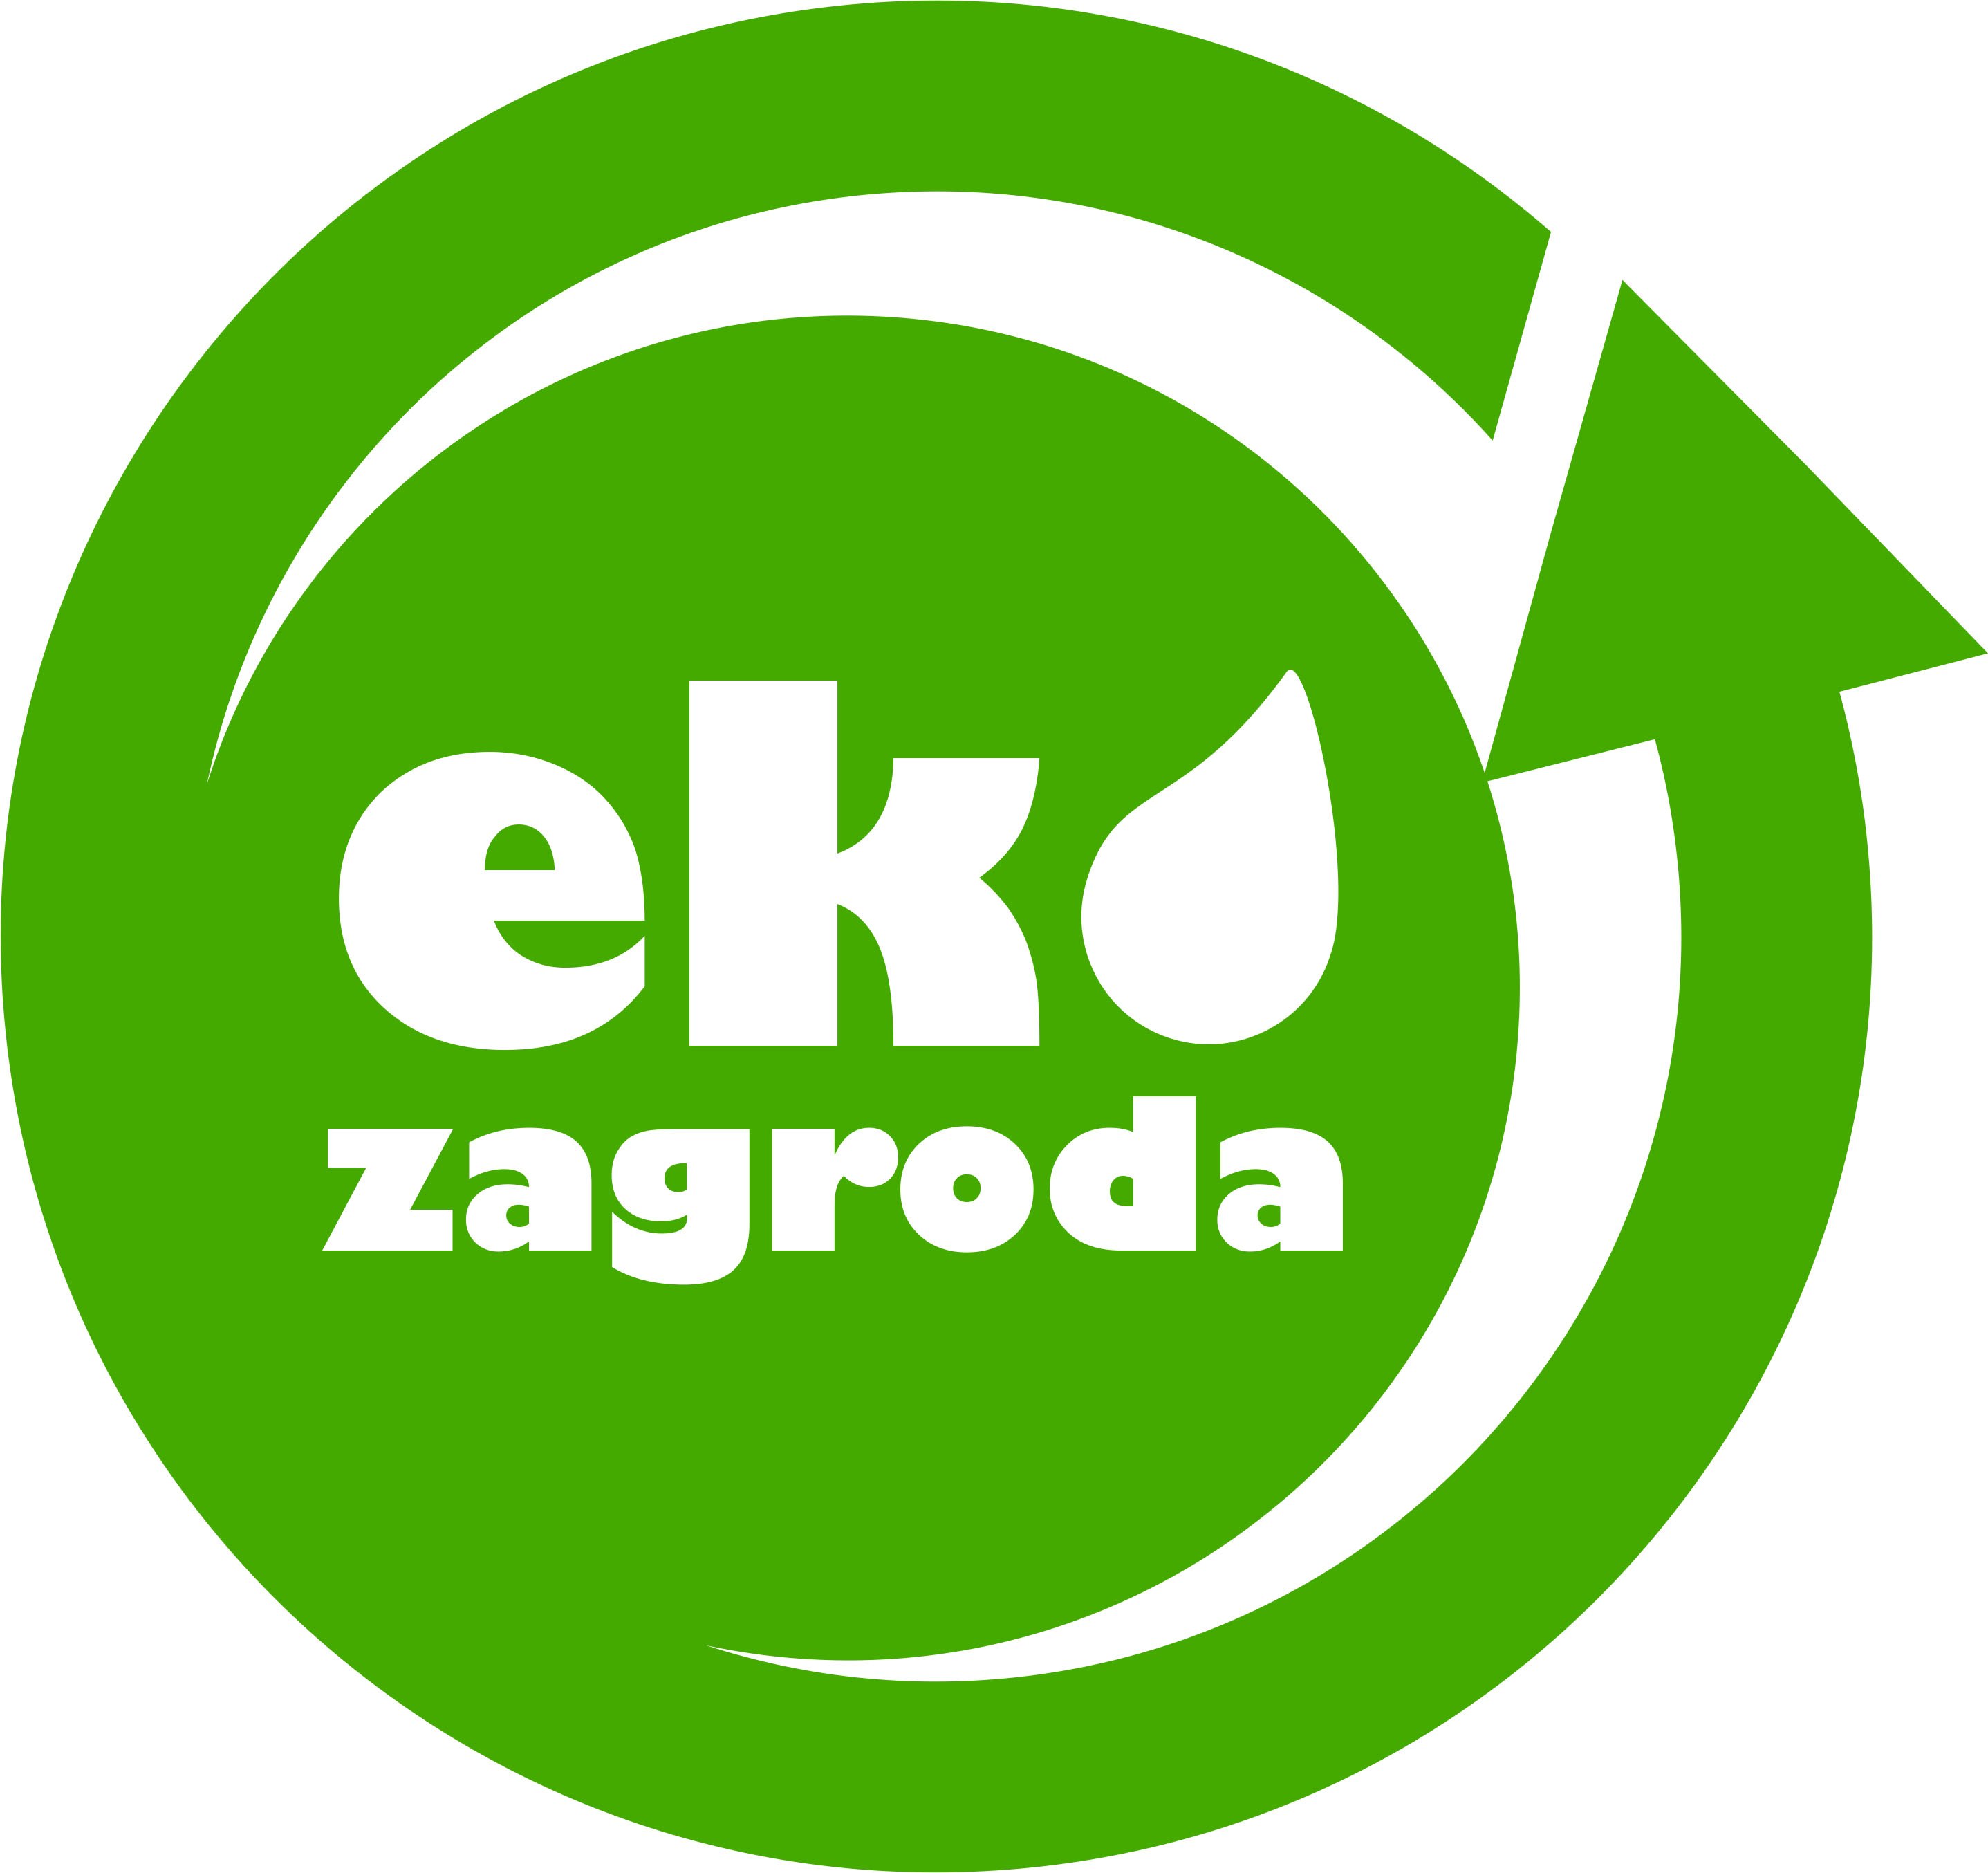  ekozagroda.com.pl 